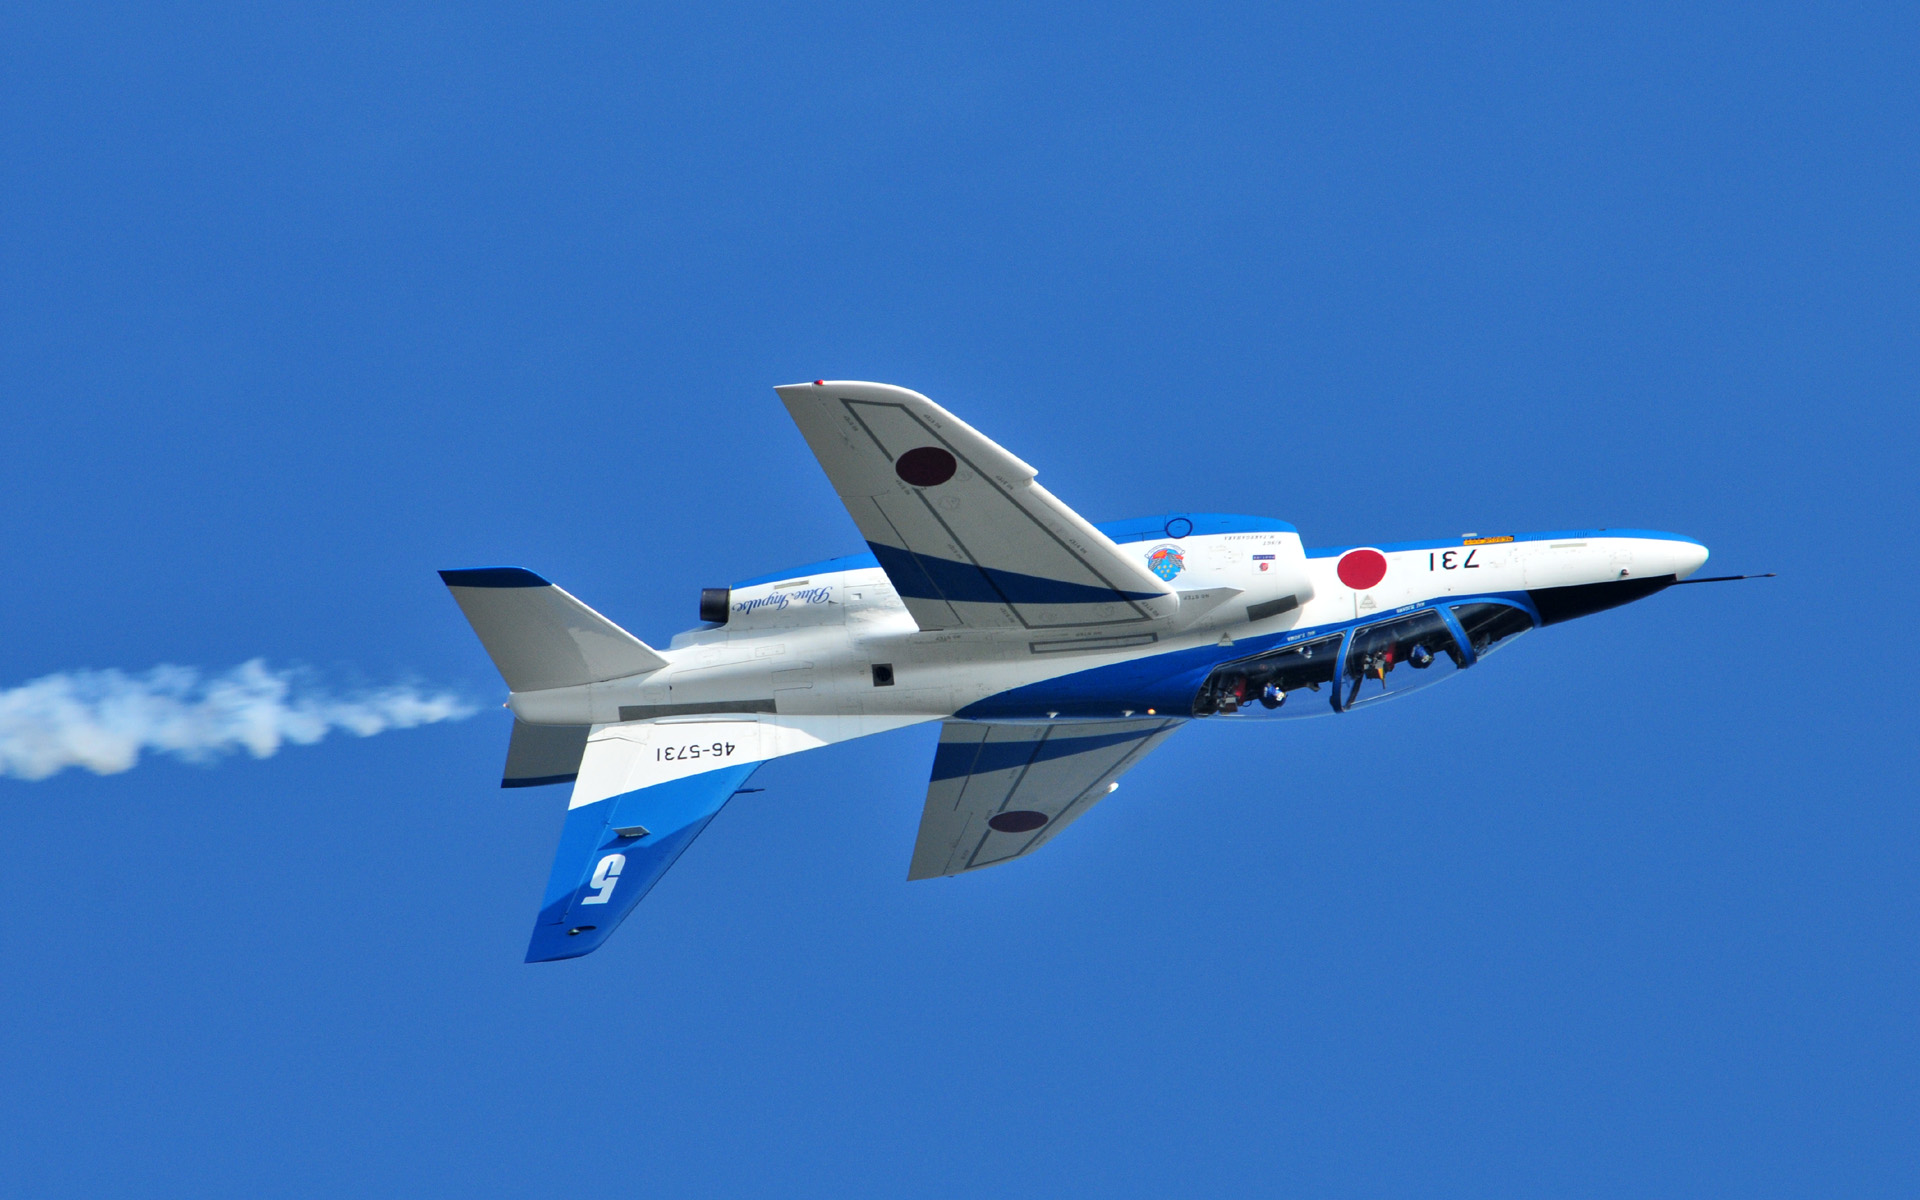 T 4 ブルーインパルス 高解像度 壁紙に使える航空機の画像まとめ 自衛隊編 Naver まとめ